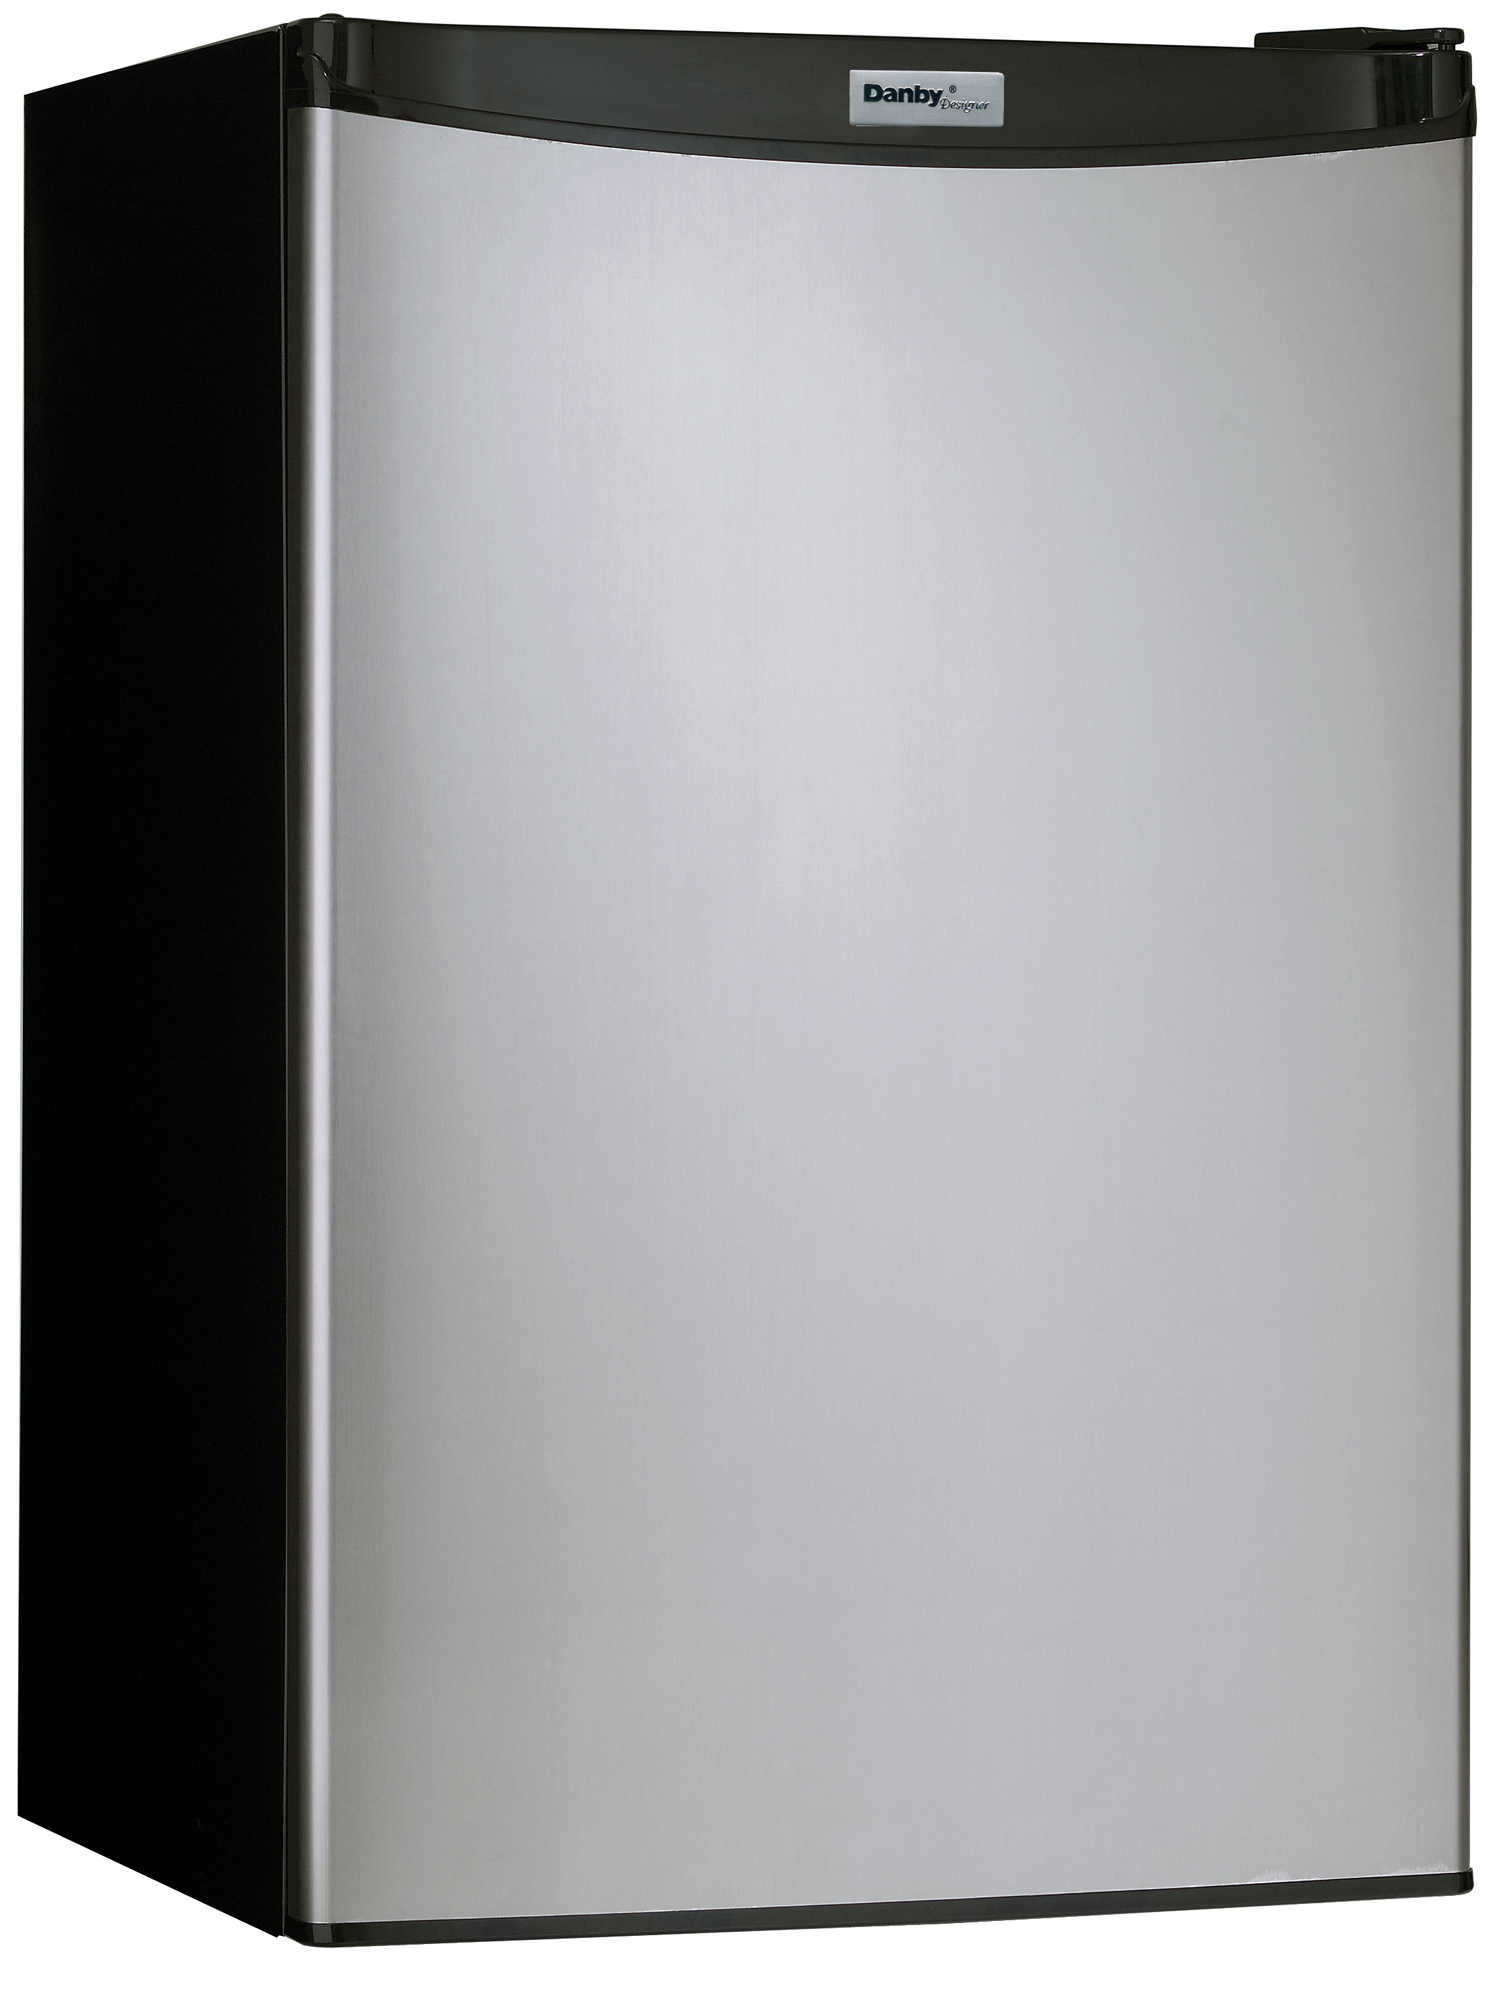 How do you repair a Danbu refrigerator?